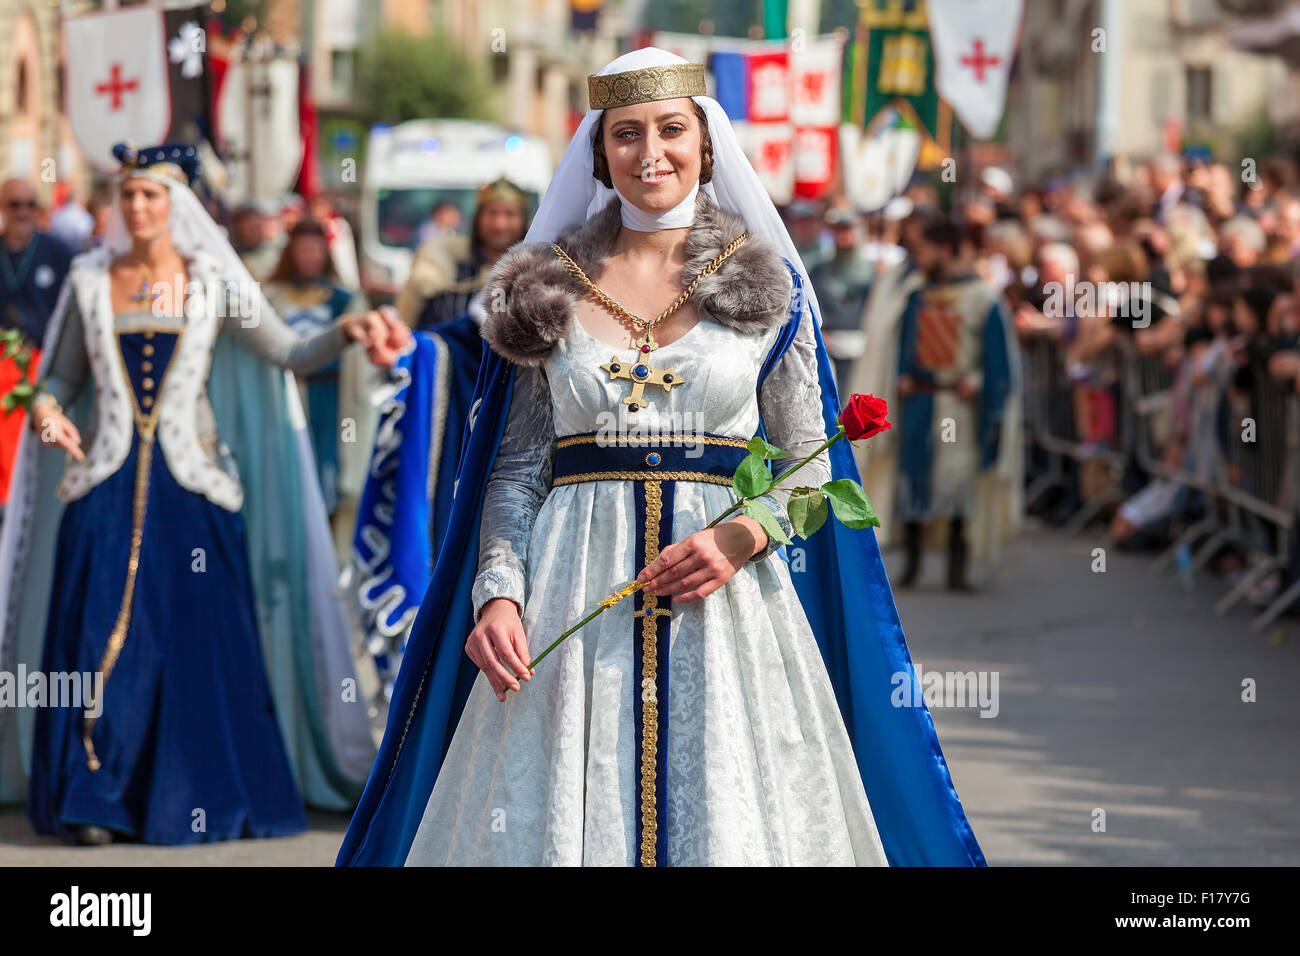 Participante en el histórico desfile en traje noble medieval en Alba,  Italia Fotografía de stock - Alamy